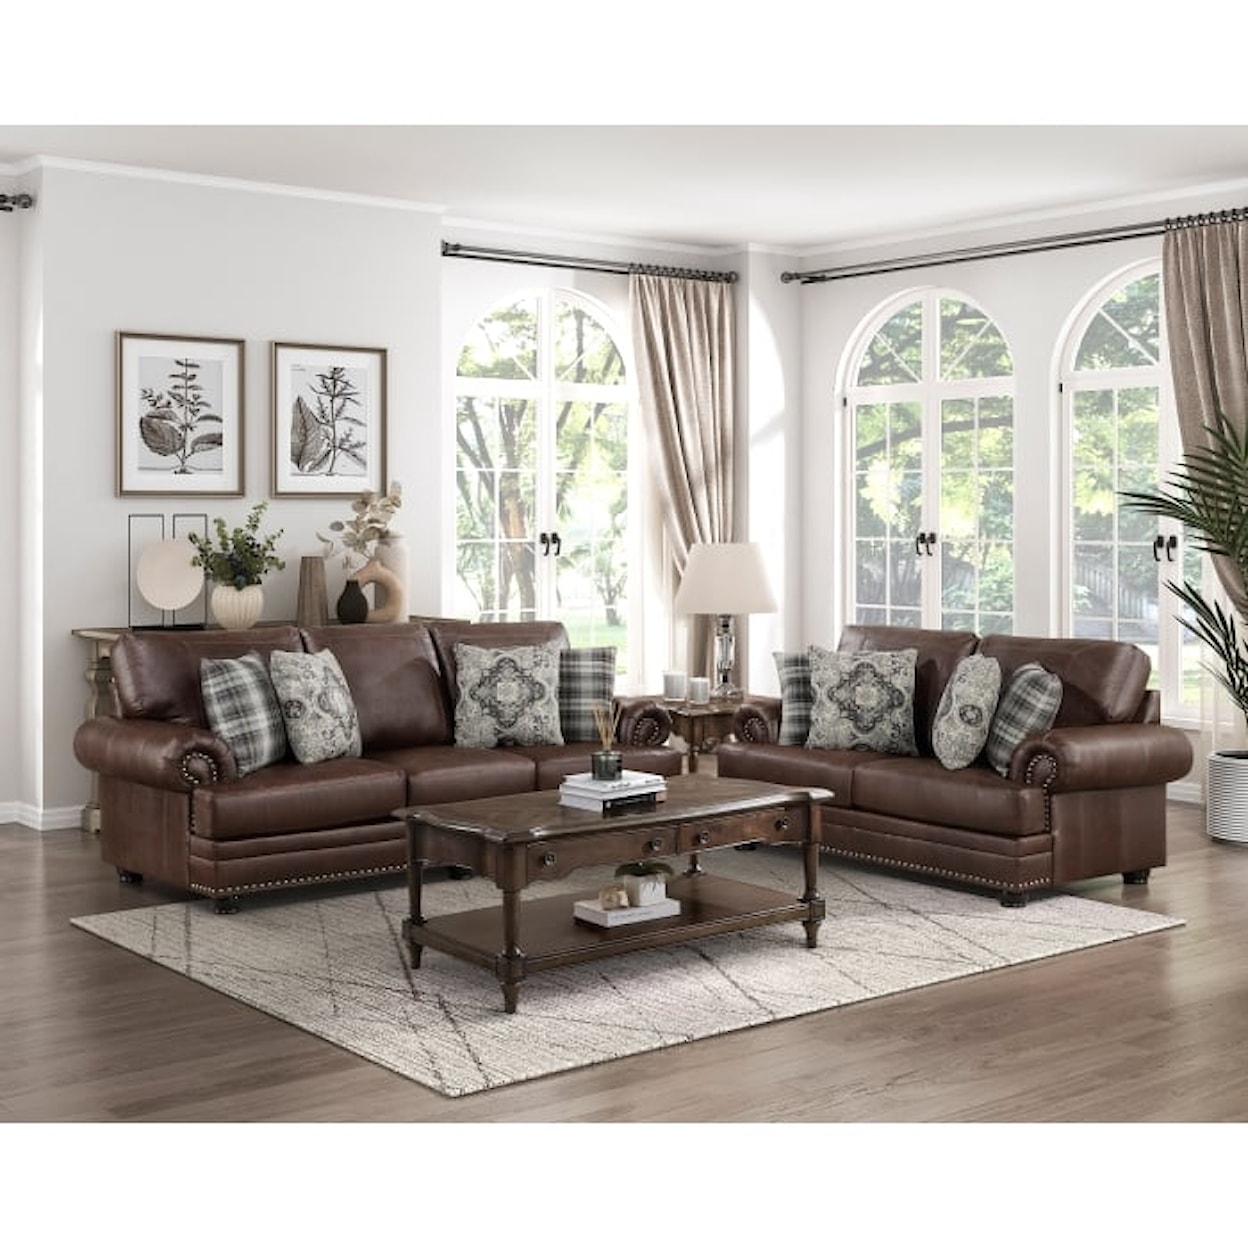 Homelegance Franklin 2-Piece Living Room Set